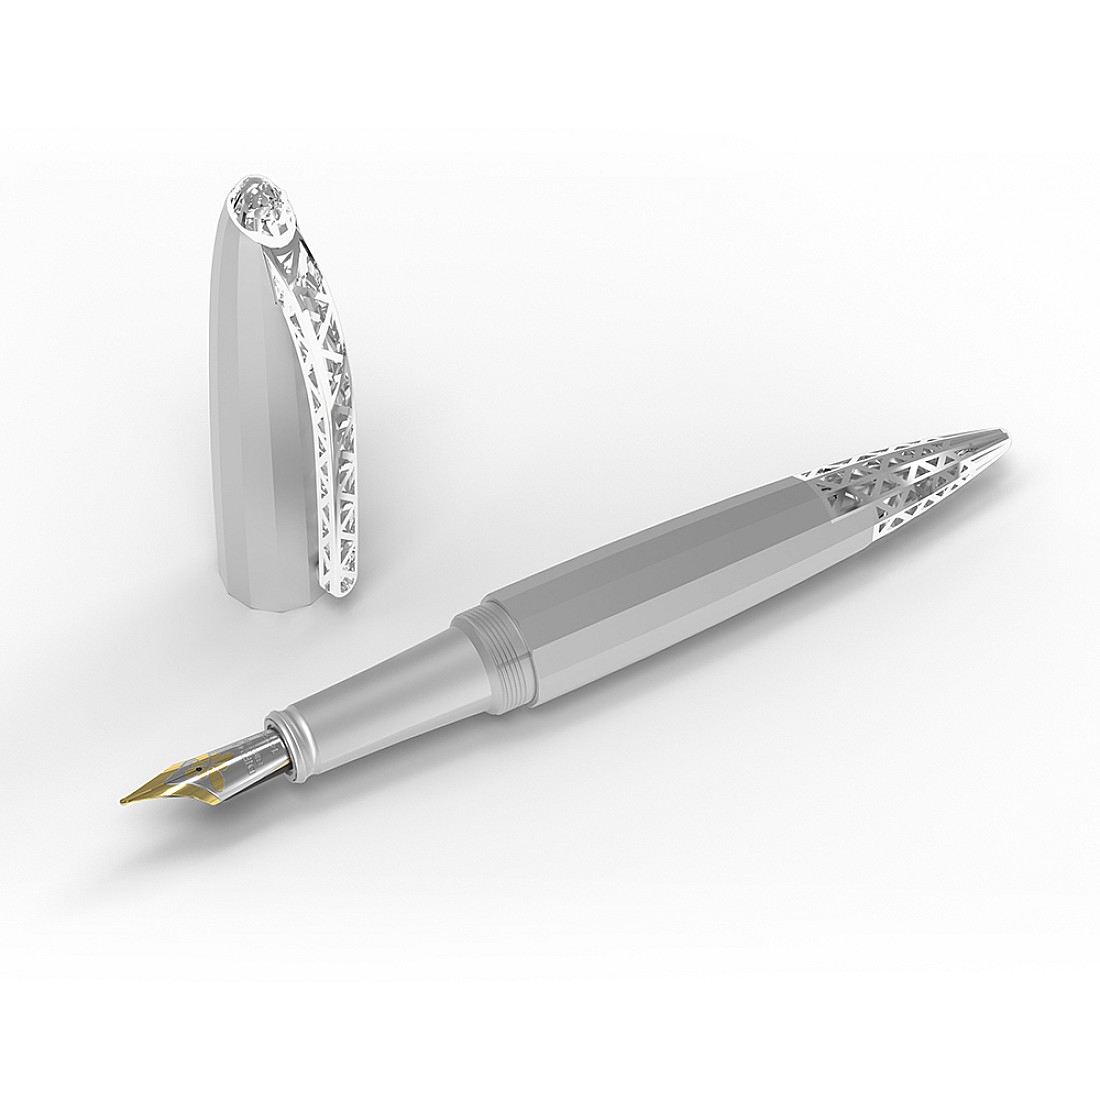 Diplomat Zepp Chrome Fountain pen